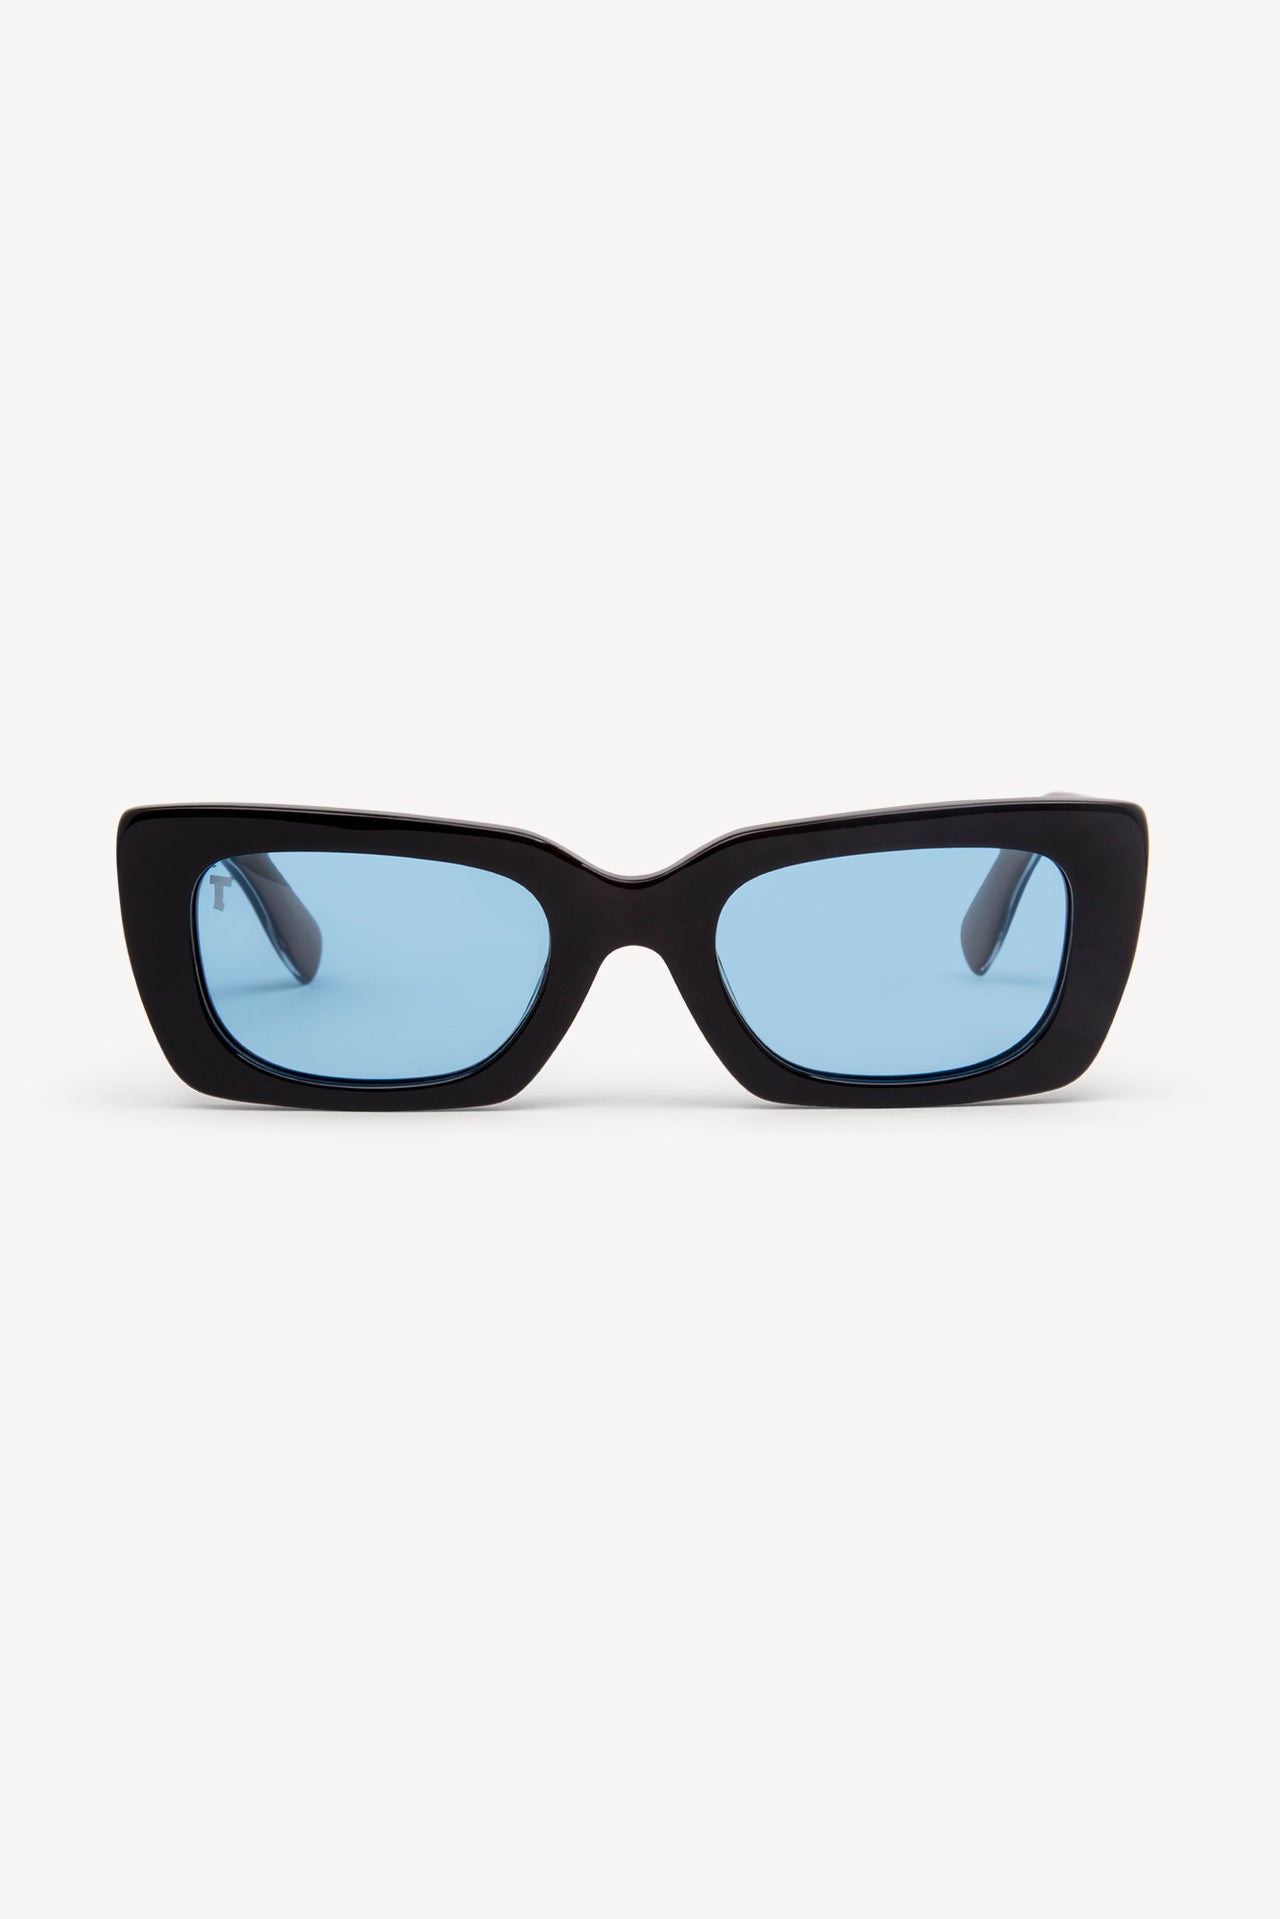 TOATIE Manila Rectangular Sunglasses BLACK/BLUE